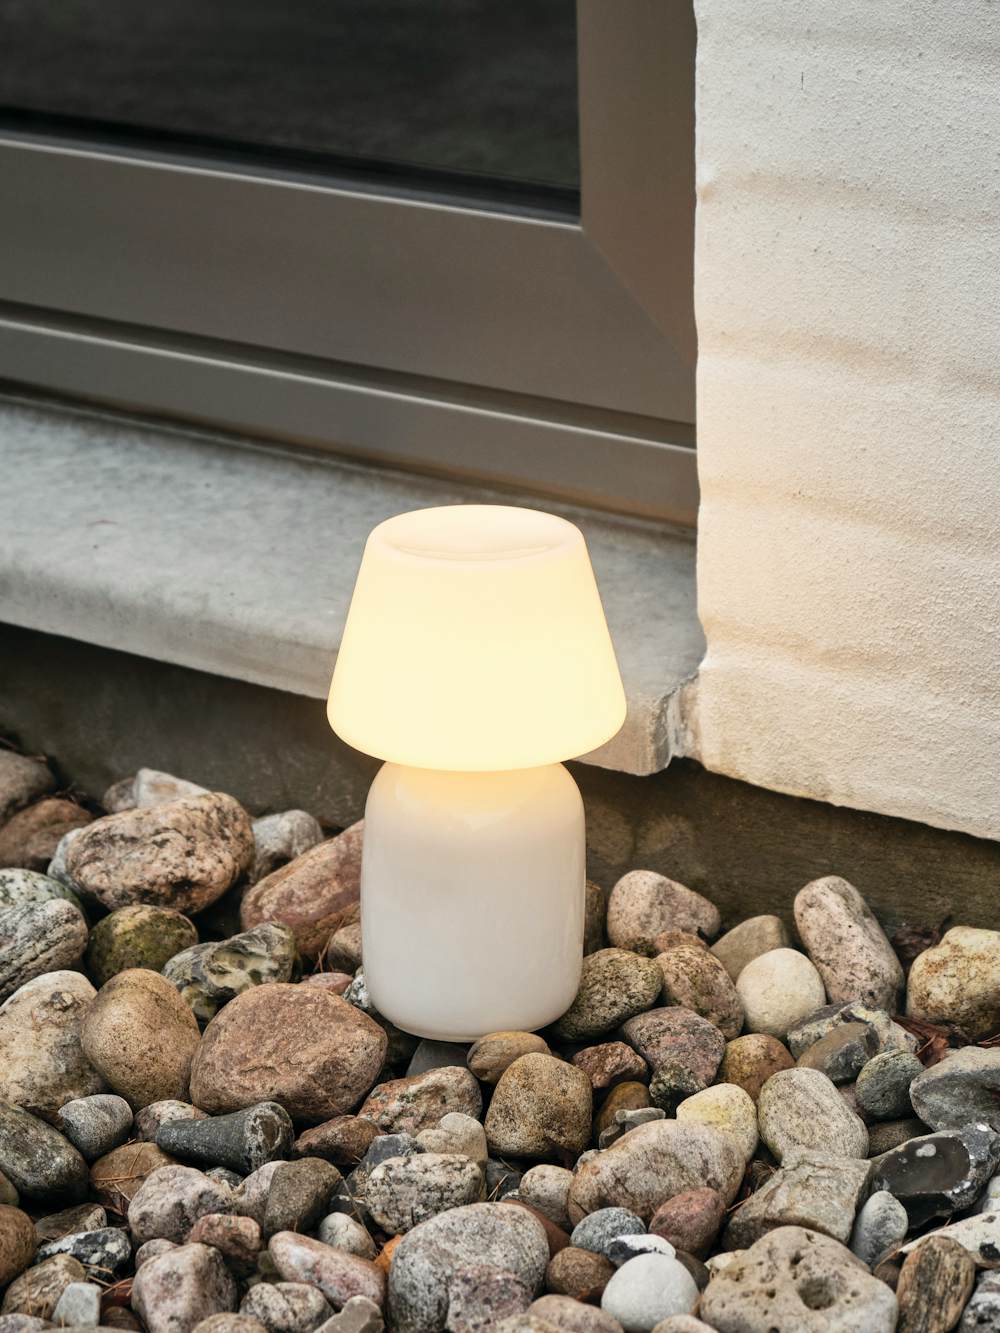 Apollo Portable Lamp in an outdoor patio setting